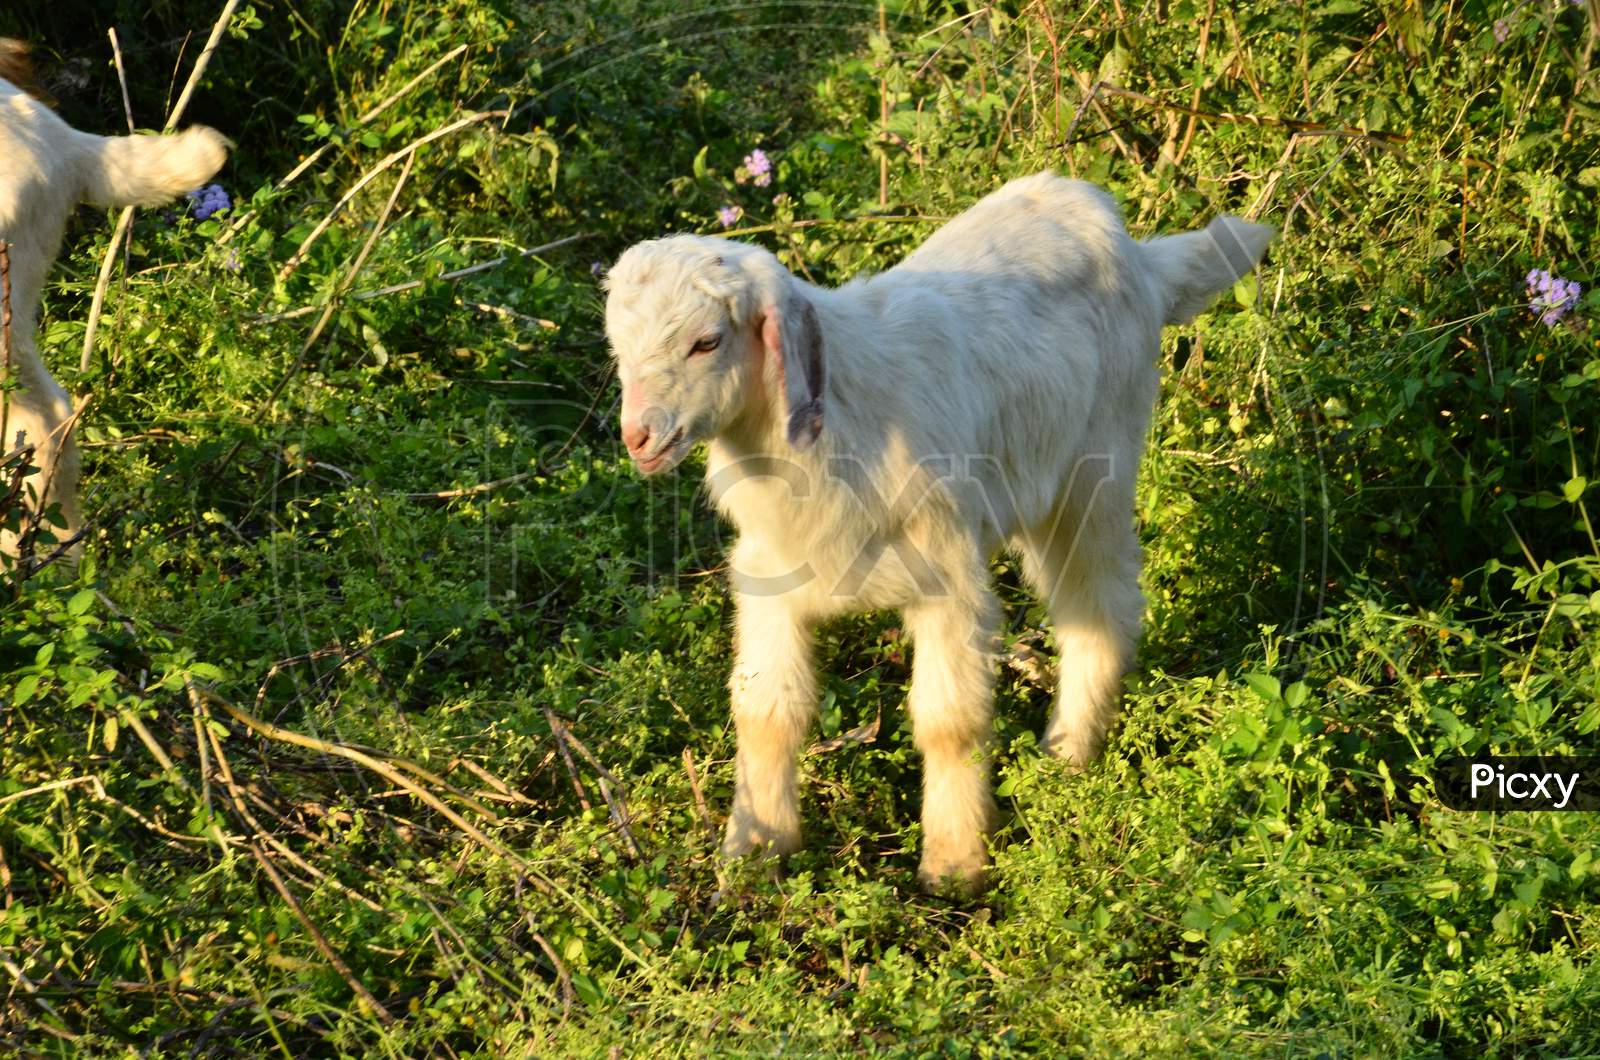 Goat in natural location Himachal Pradas, India